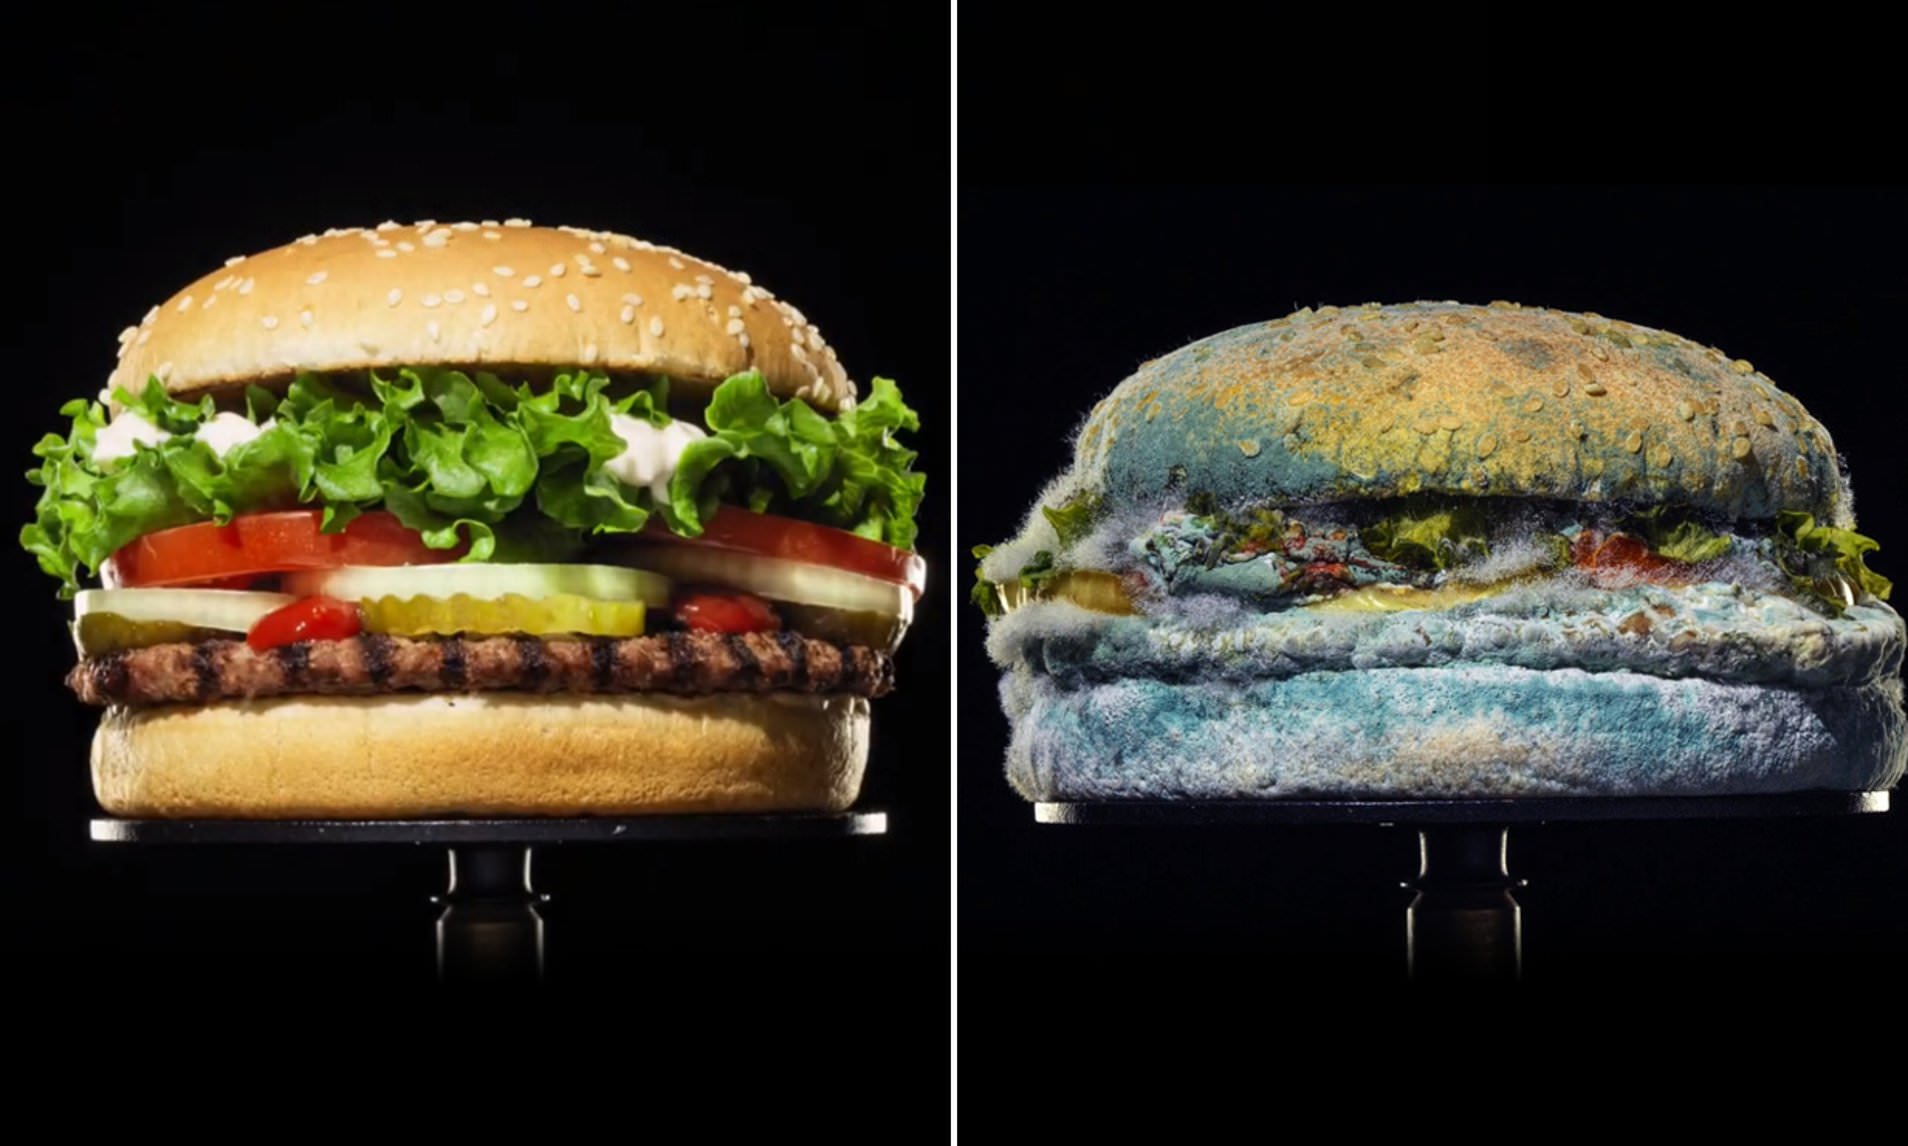 Los polémicos anuncios que las cadenas de comida rápida quieren olvidar